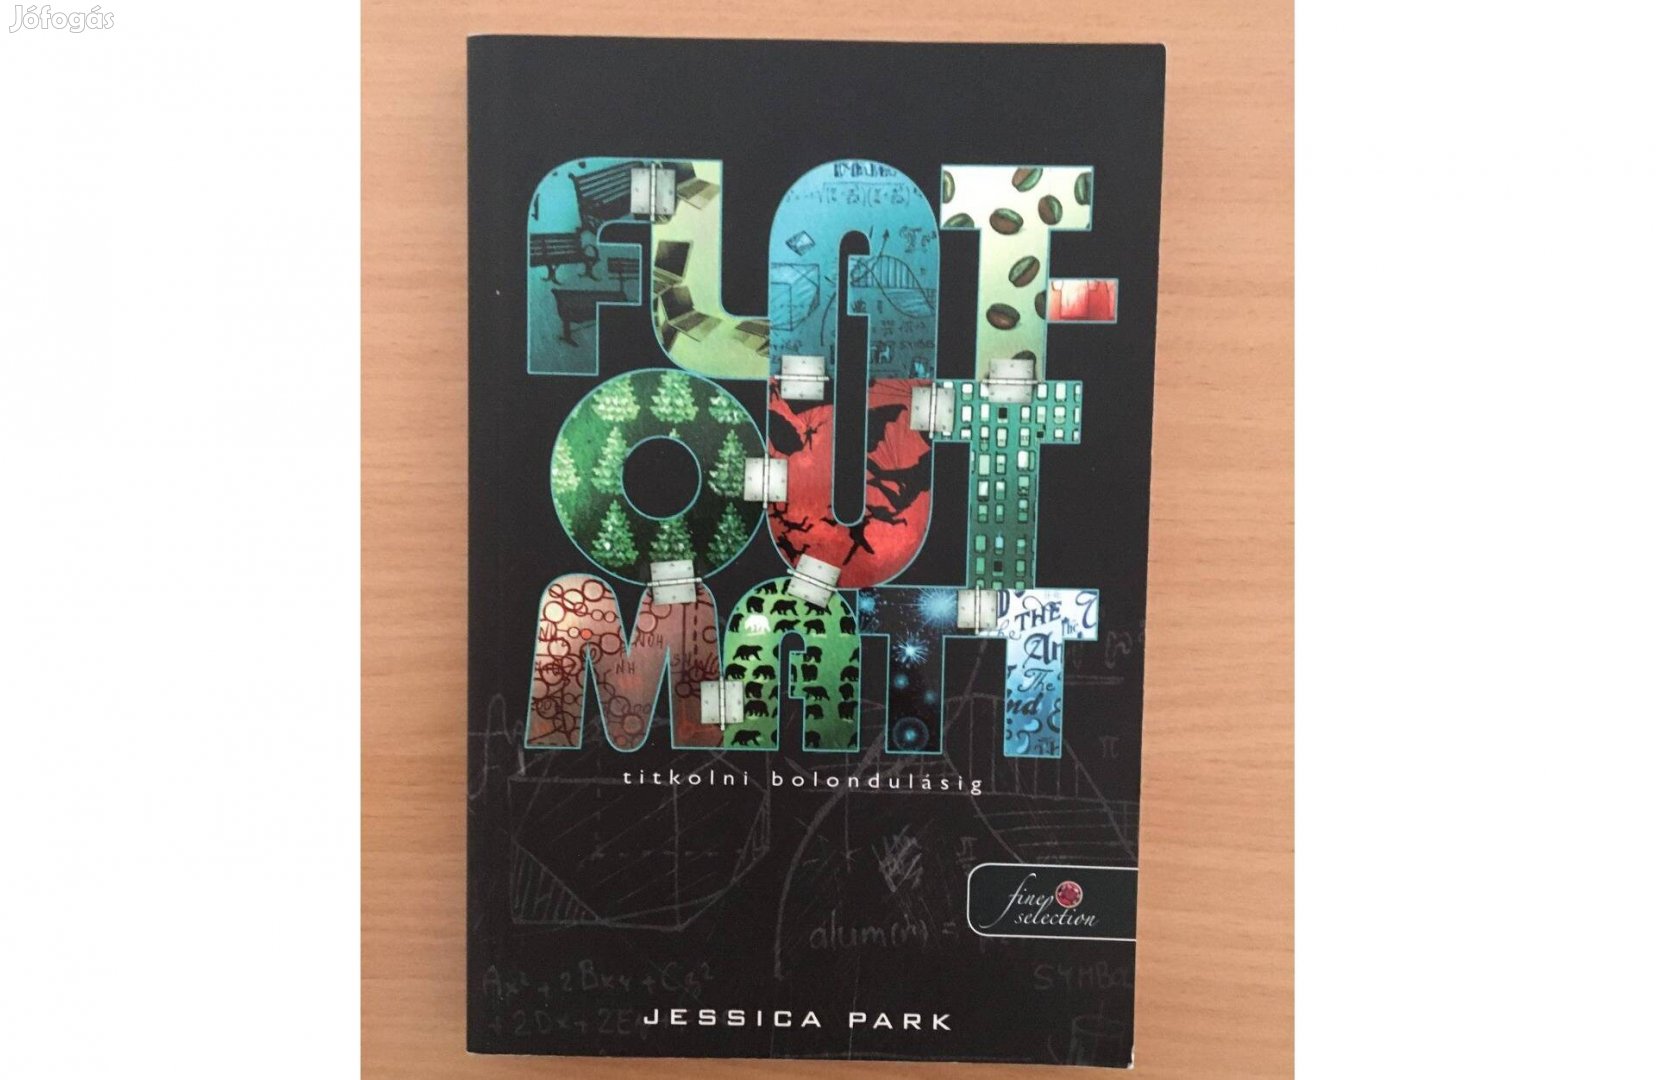 Jessica Park: Flat-Out-Matt - Titkolni bolondulásig című könyv